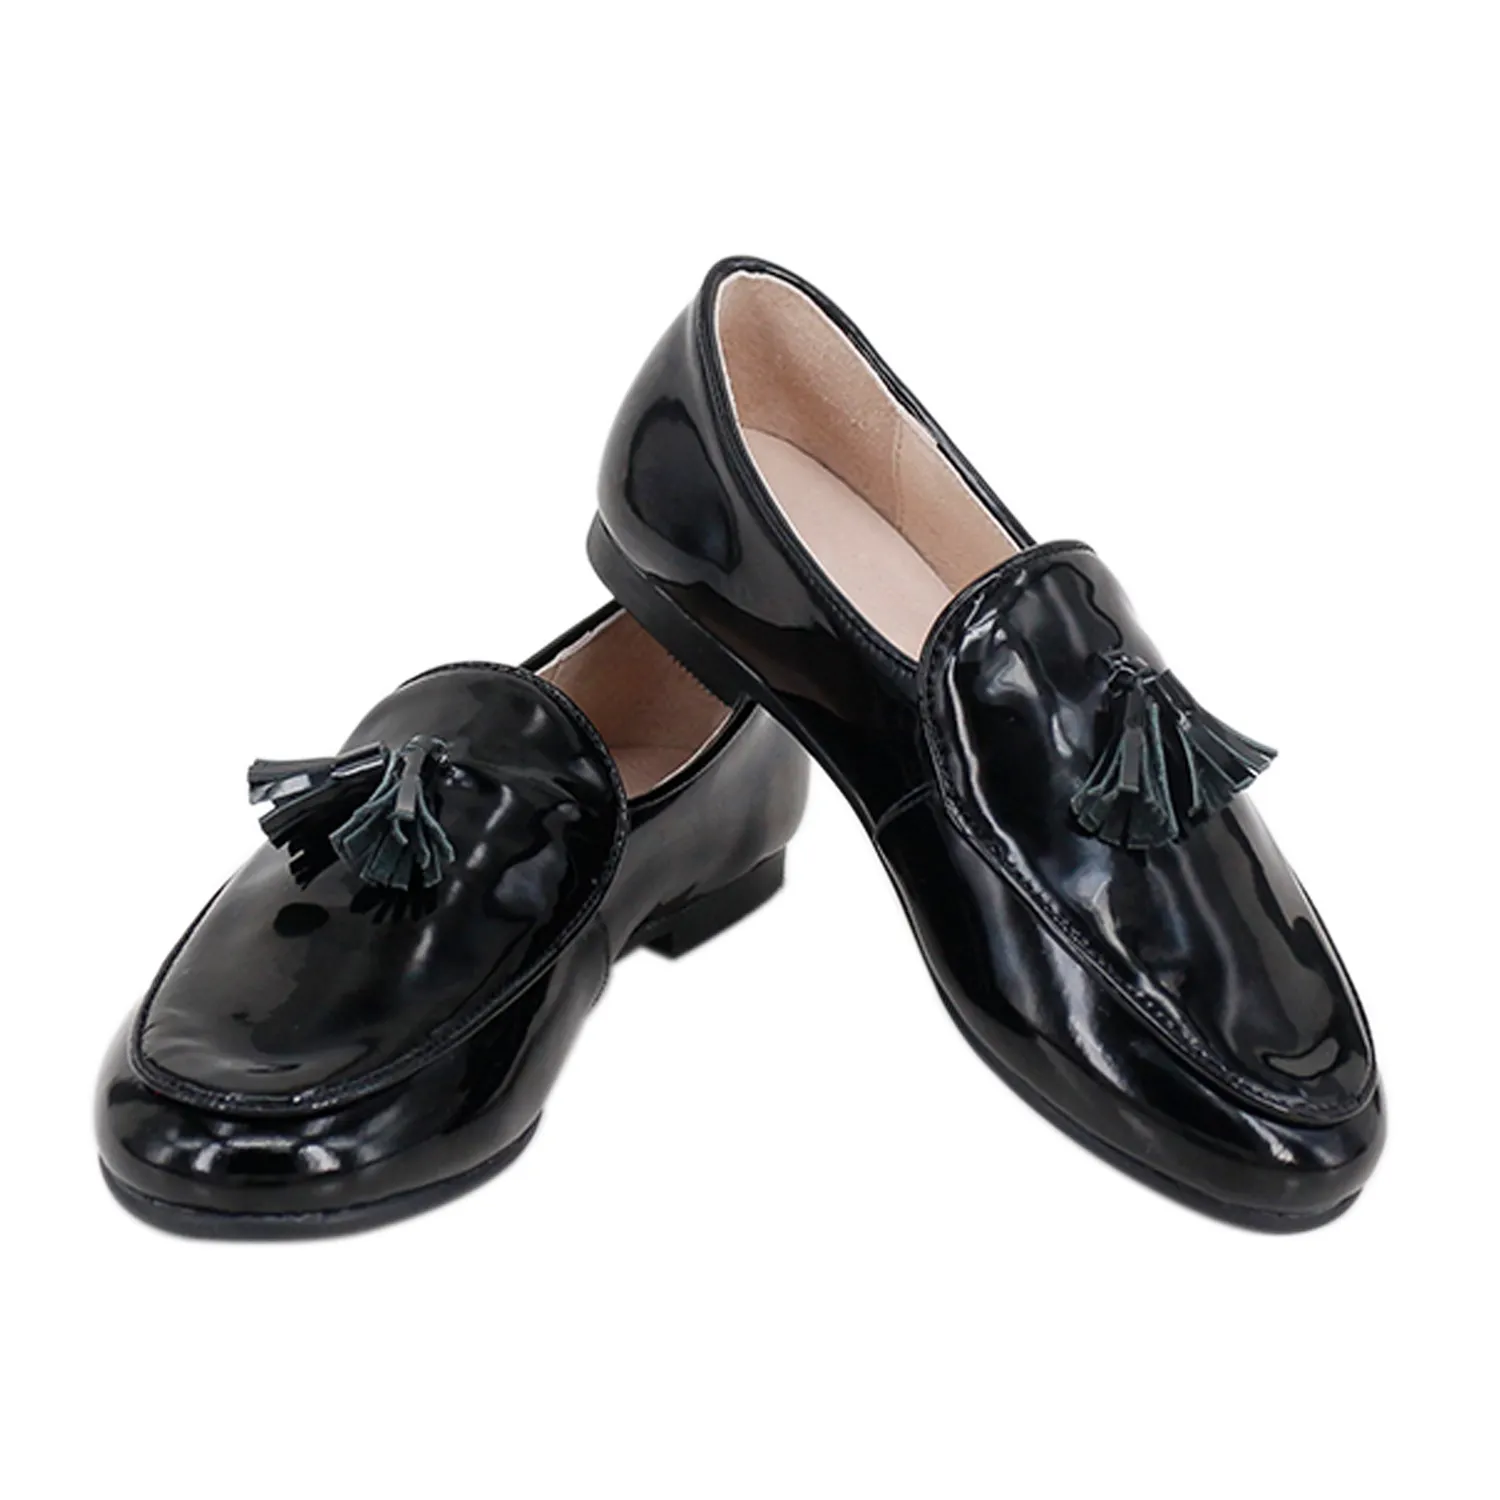 Sapatilhas de couro legítimo artesanal, sapatos masculinos com base em borracha macia e cor preta, feito à mão, 2023